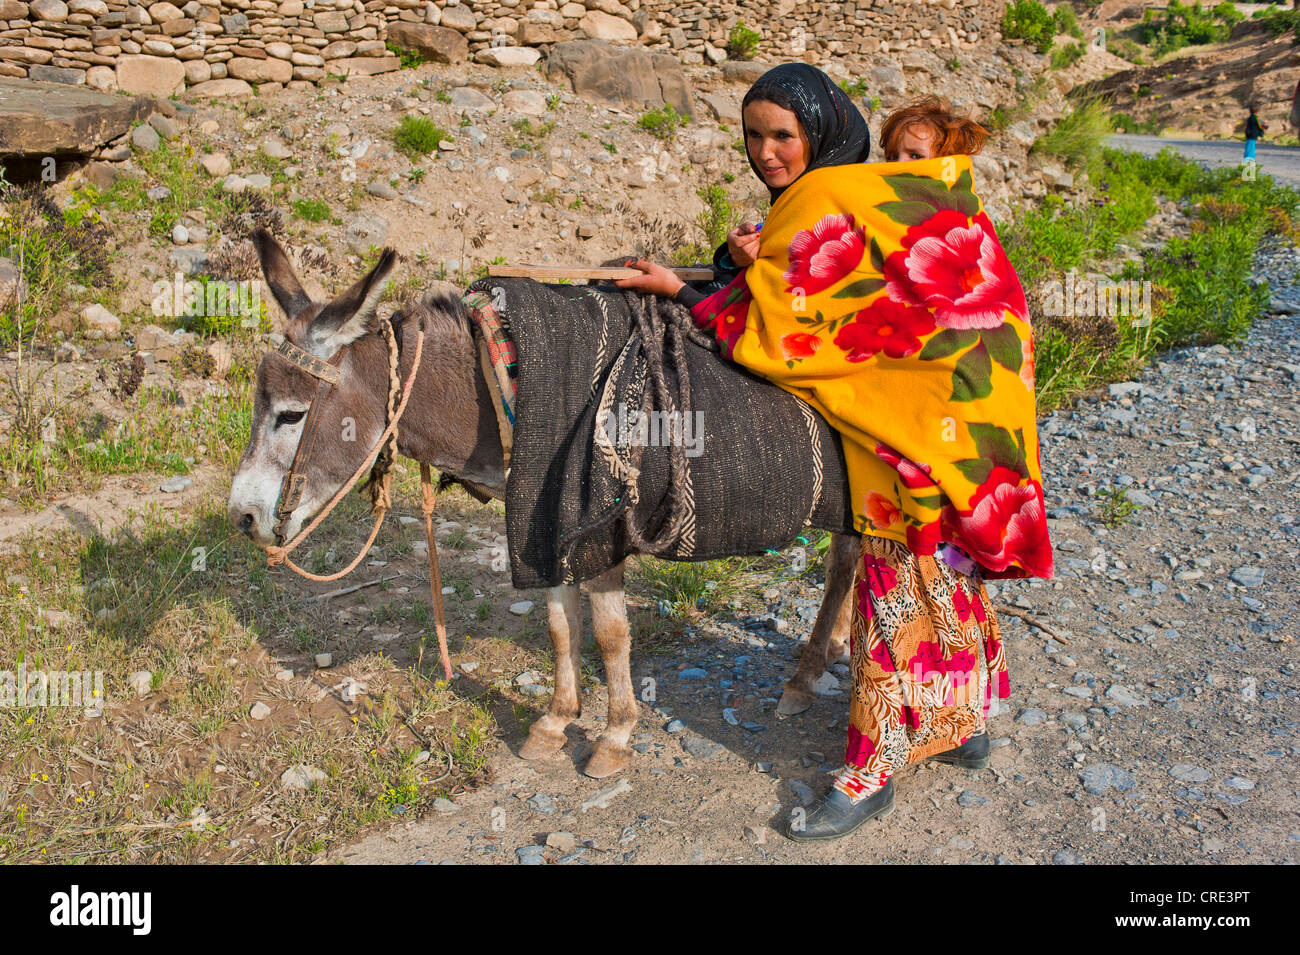 Giovane madre in viaggio con un asino e portando il suo bambino in una imbracatura sulla sua schiena, Alto Atlante, Marocco, Africa Foto Stock